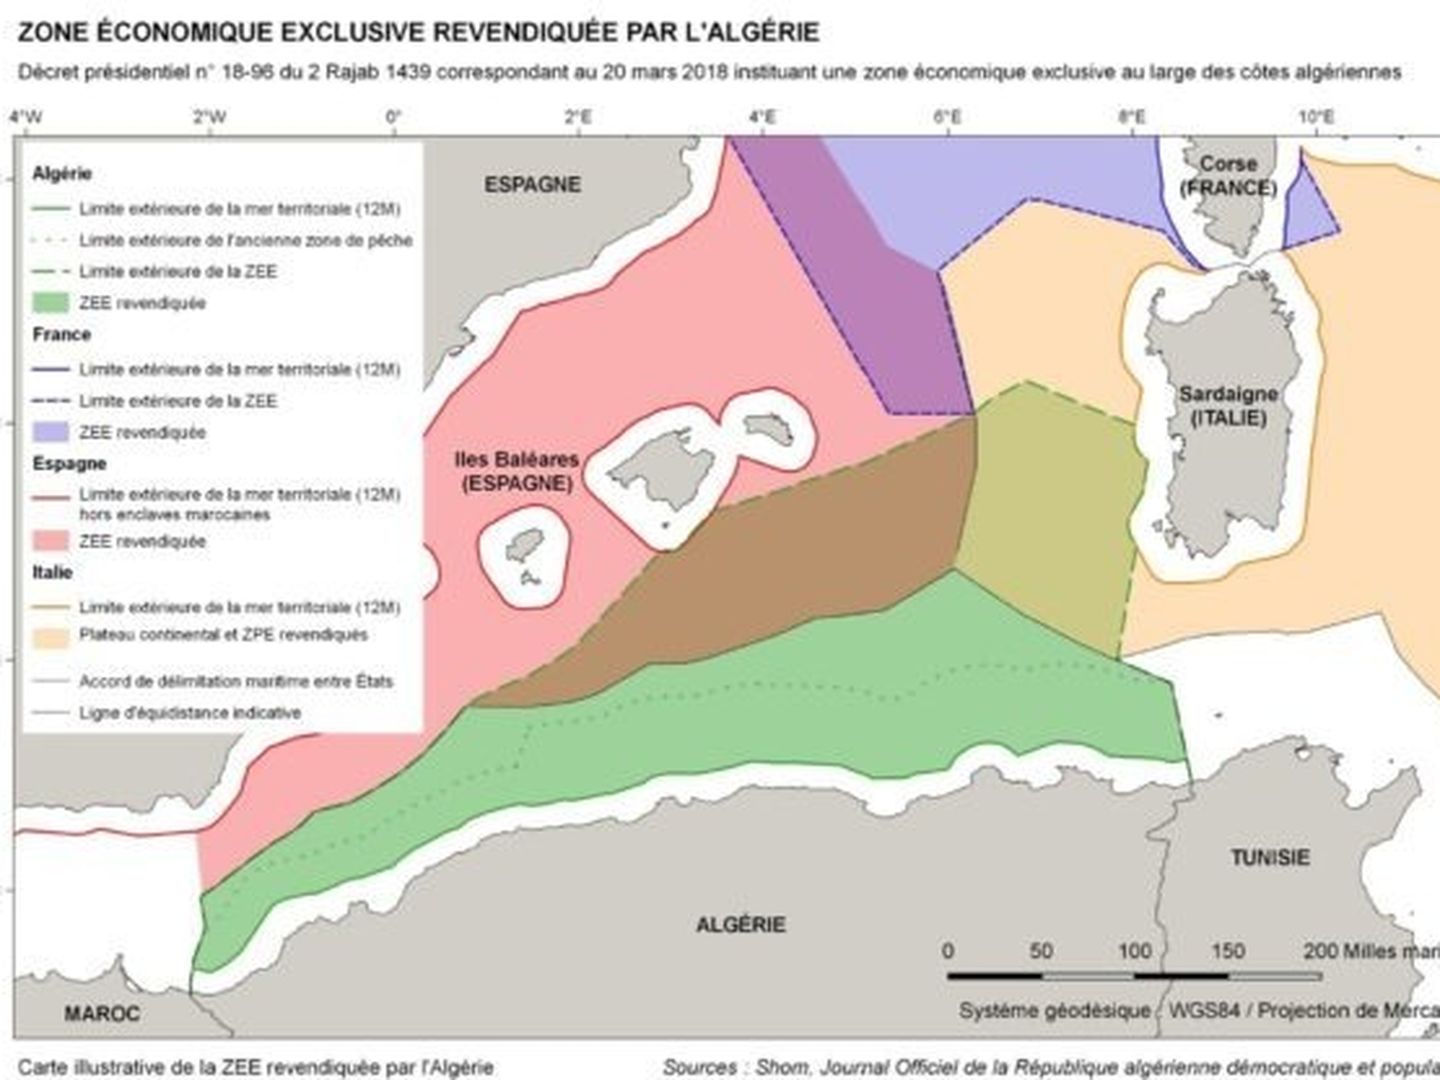 Uno de los polémicos mapas argelinos que reflejan las zonas marítimas y económicas de España, Italia y Argelia, con las nuevas pretensiones argelinas.